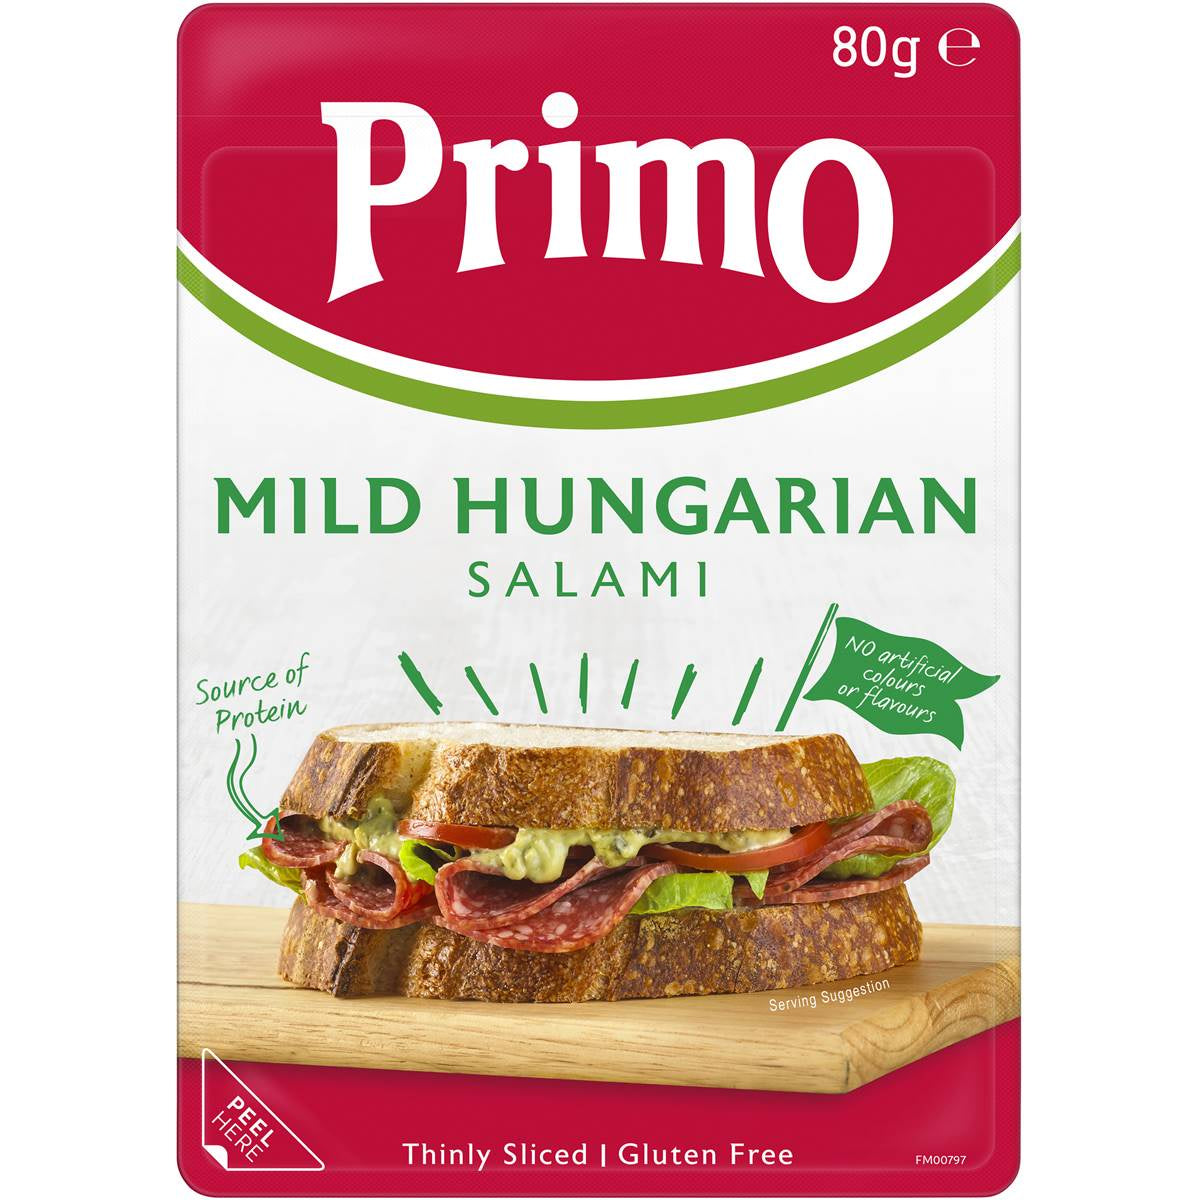 Primo Hungarian Salami Mild 80g